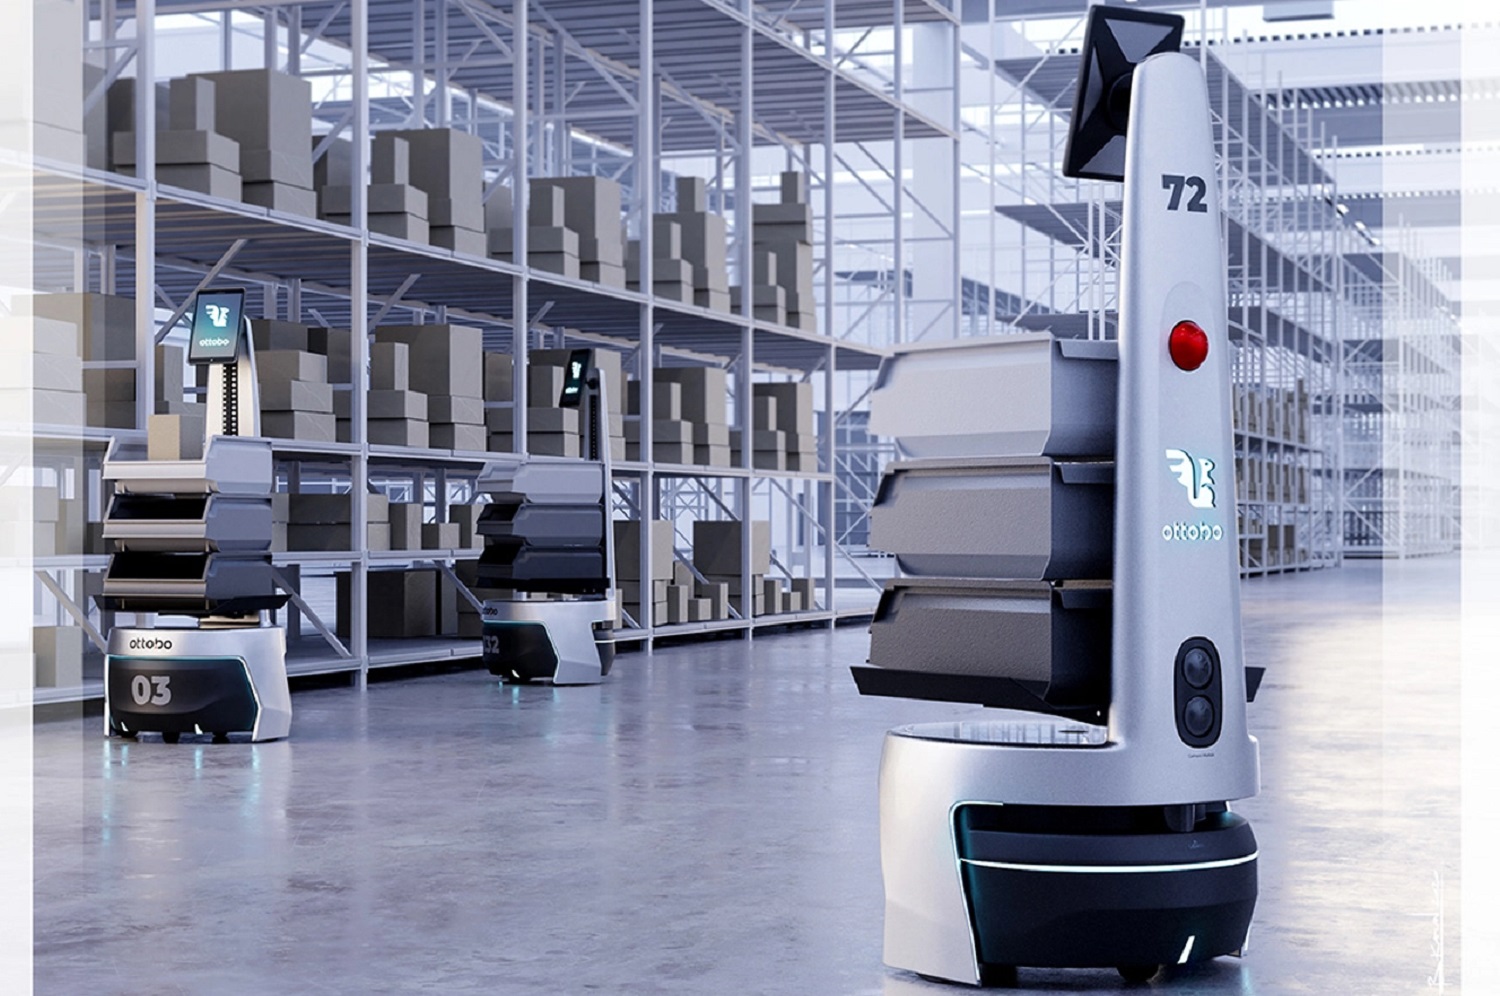 Ottobo: Robot làm việc trong kho hàng với công nghệ vận hành trực tuyến và tối ưu hóa năng suất